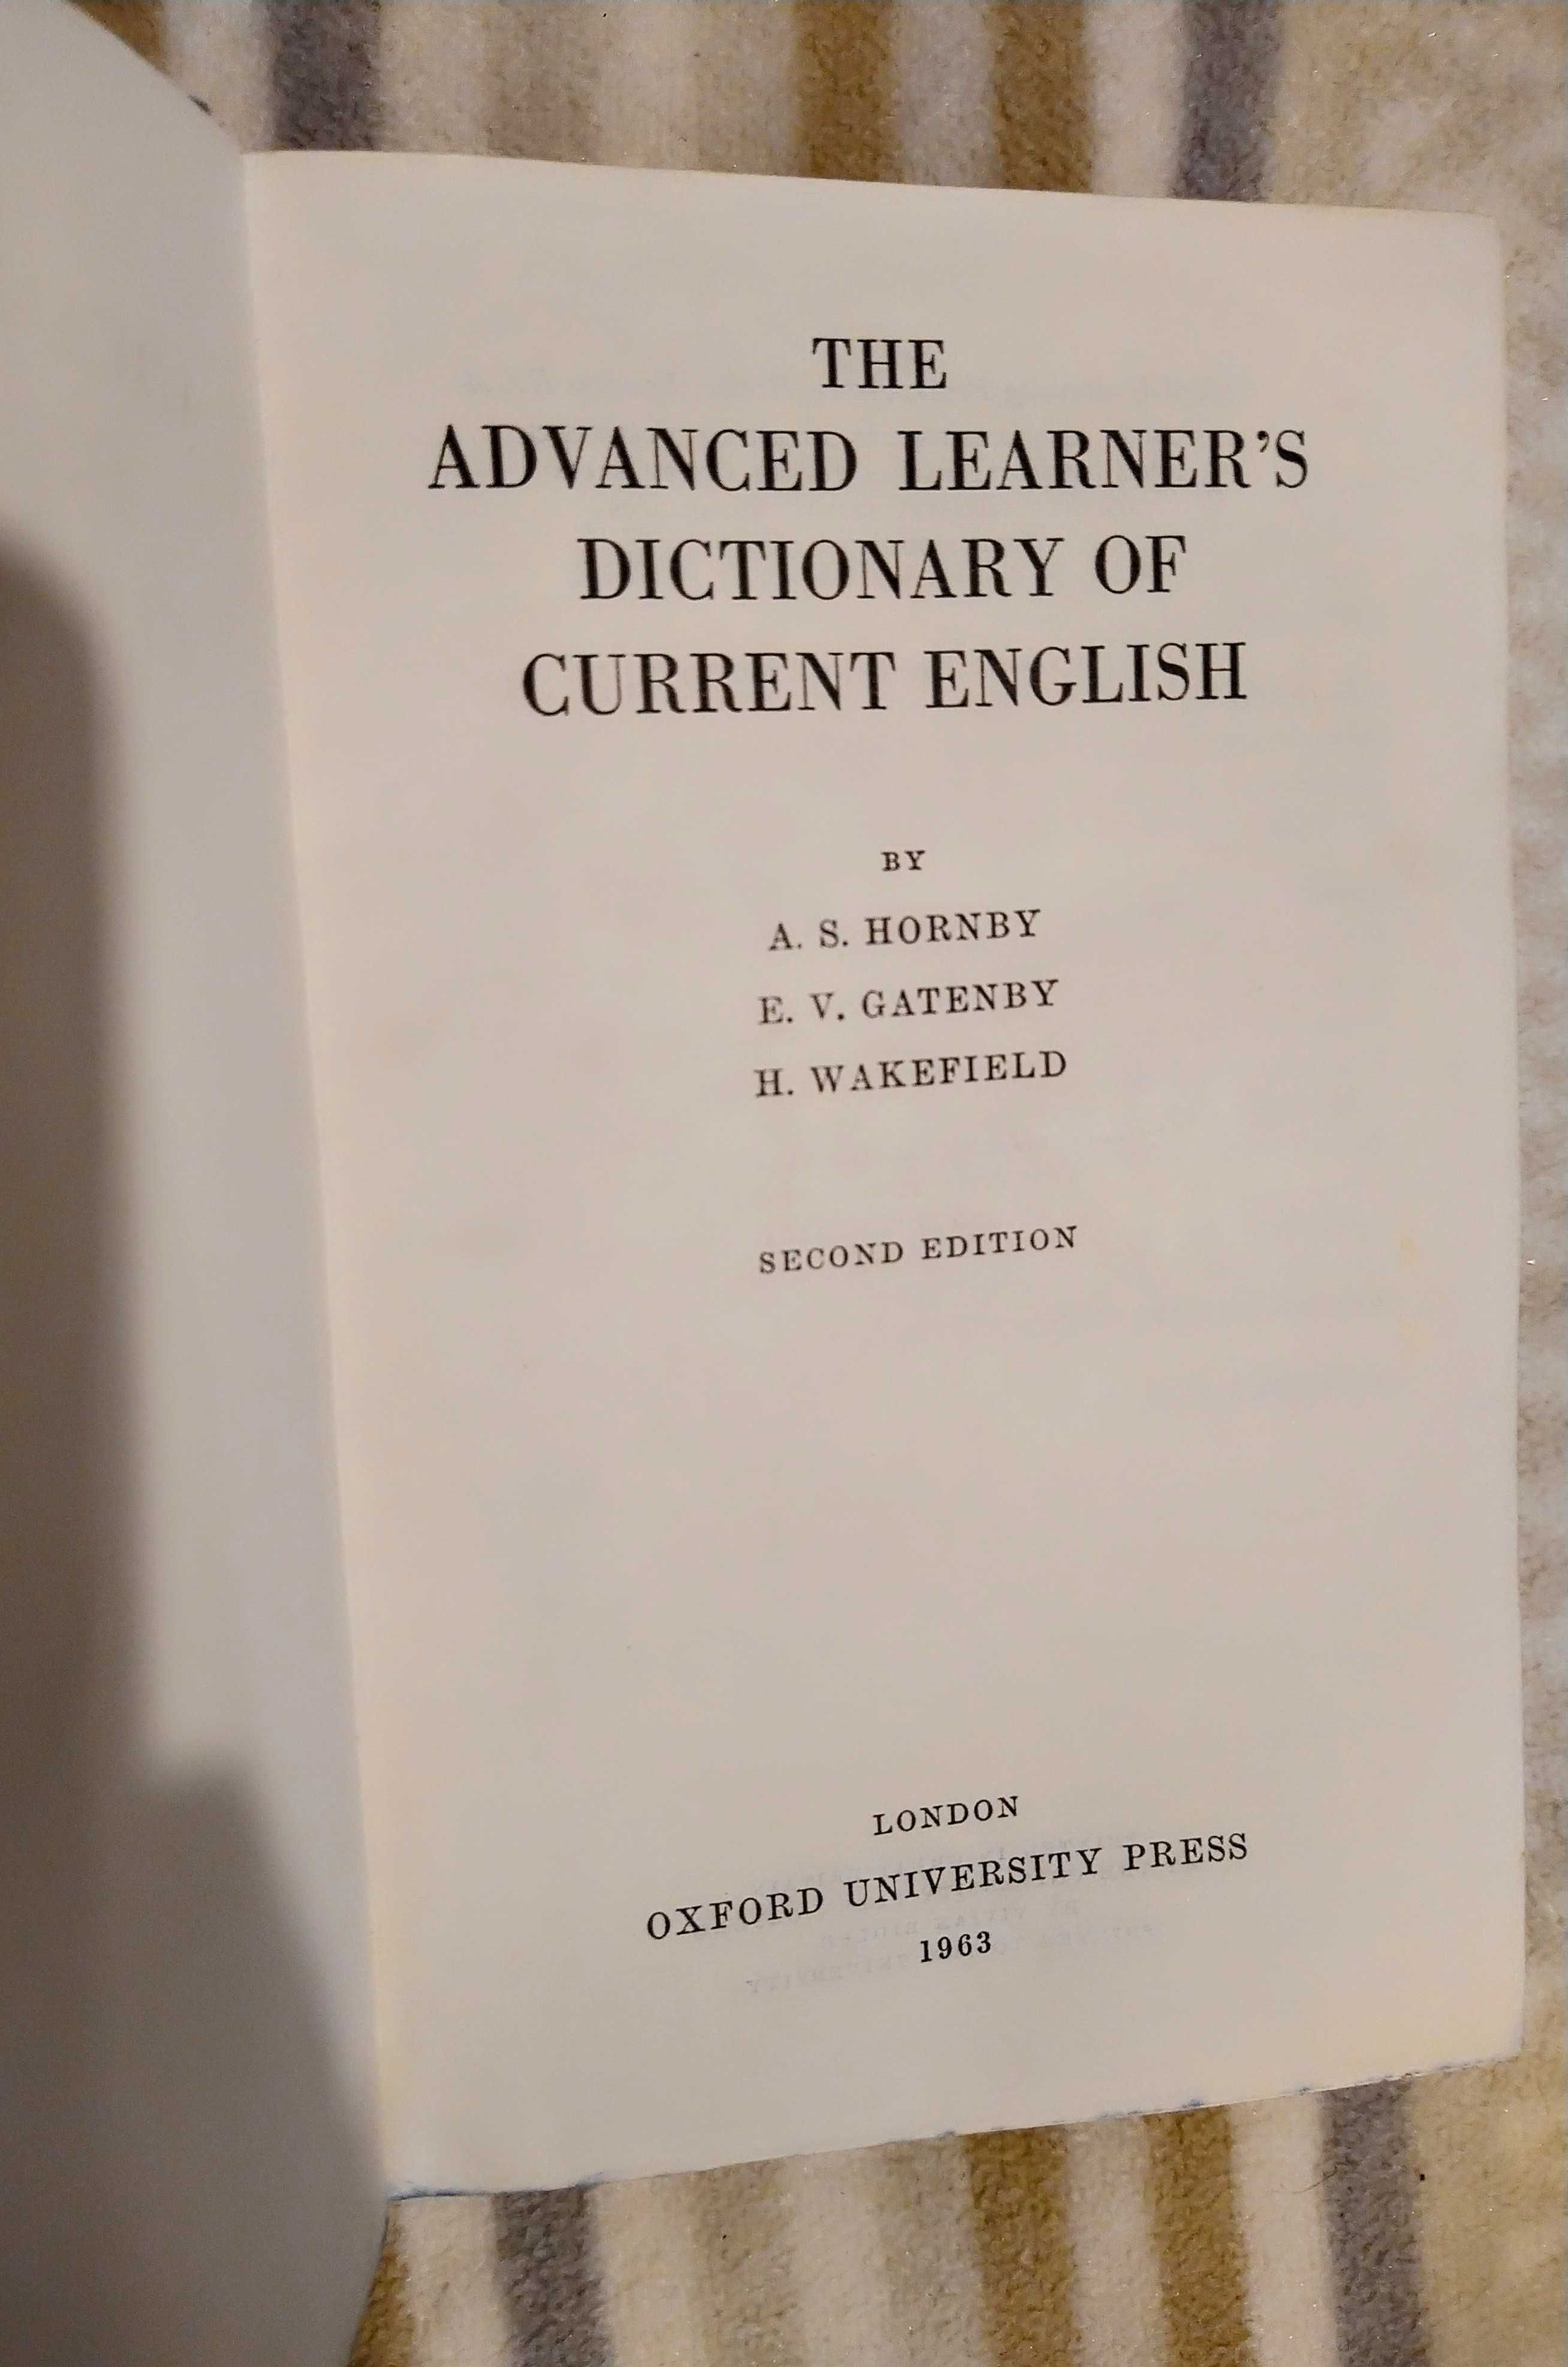 Sprzedam słownik Oxford Advanced Learners Dictionary (wydanie z 1963)